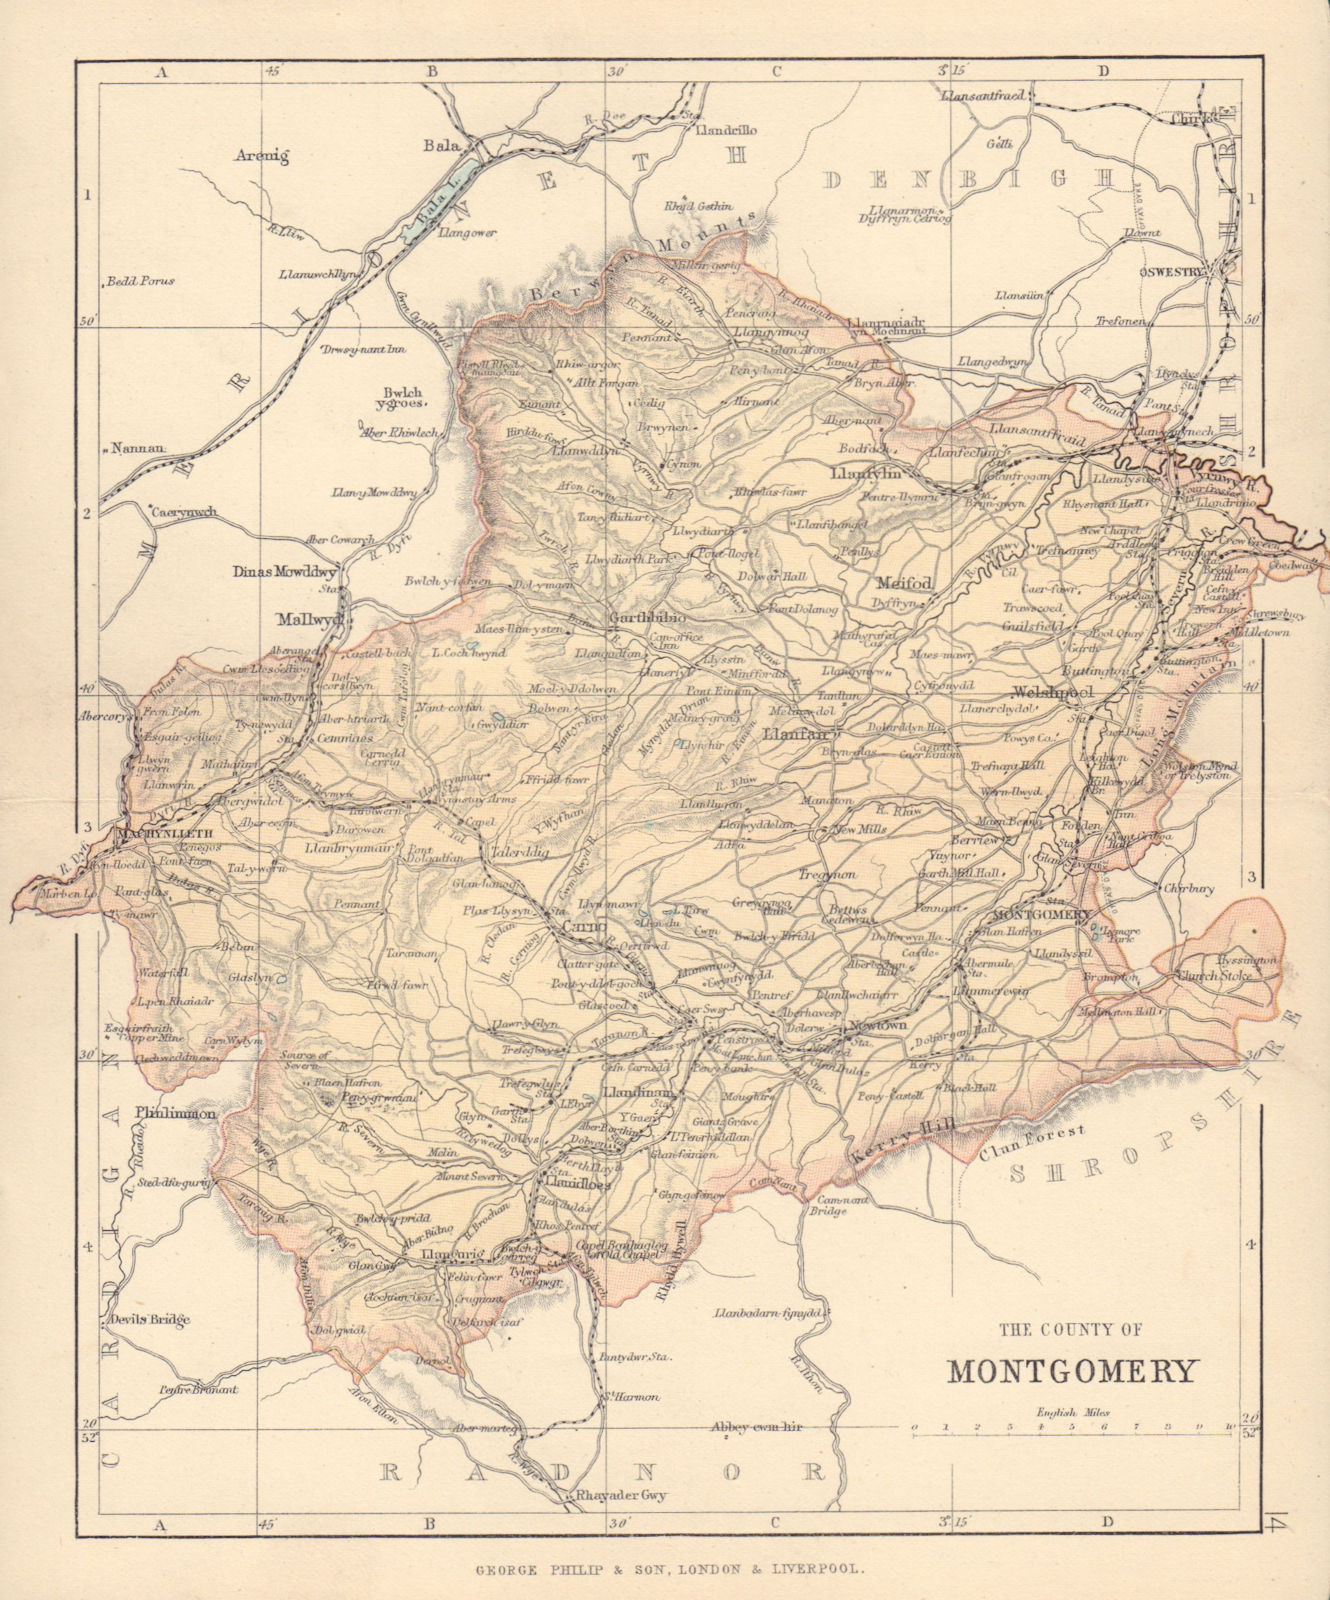 MONTGOMERYSHIRE "County of Montgomery" Welshpool Wales BARTHOLOMEW 1890 map